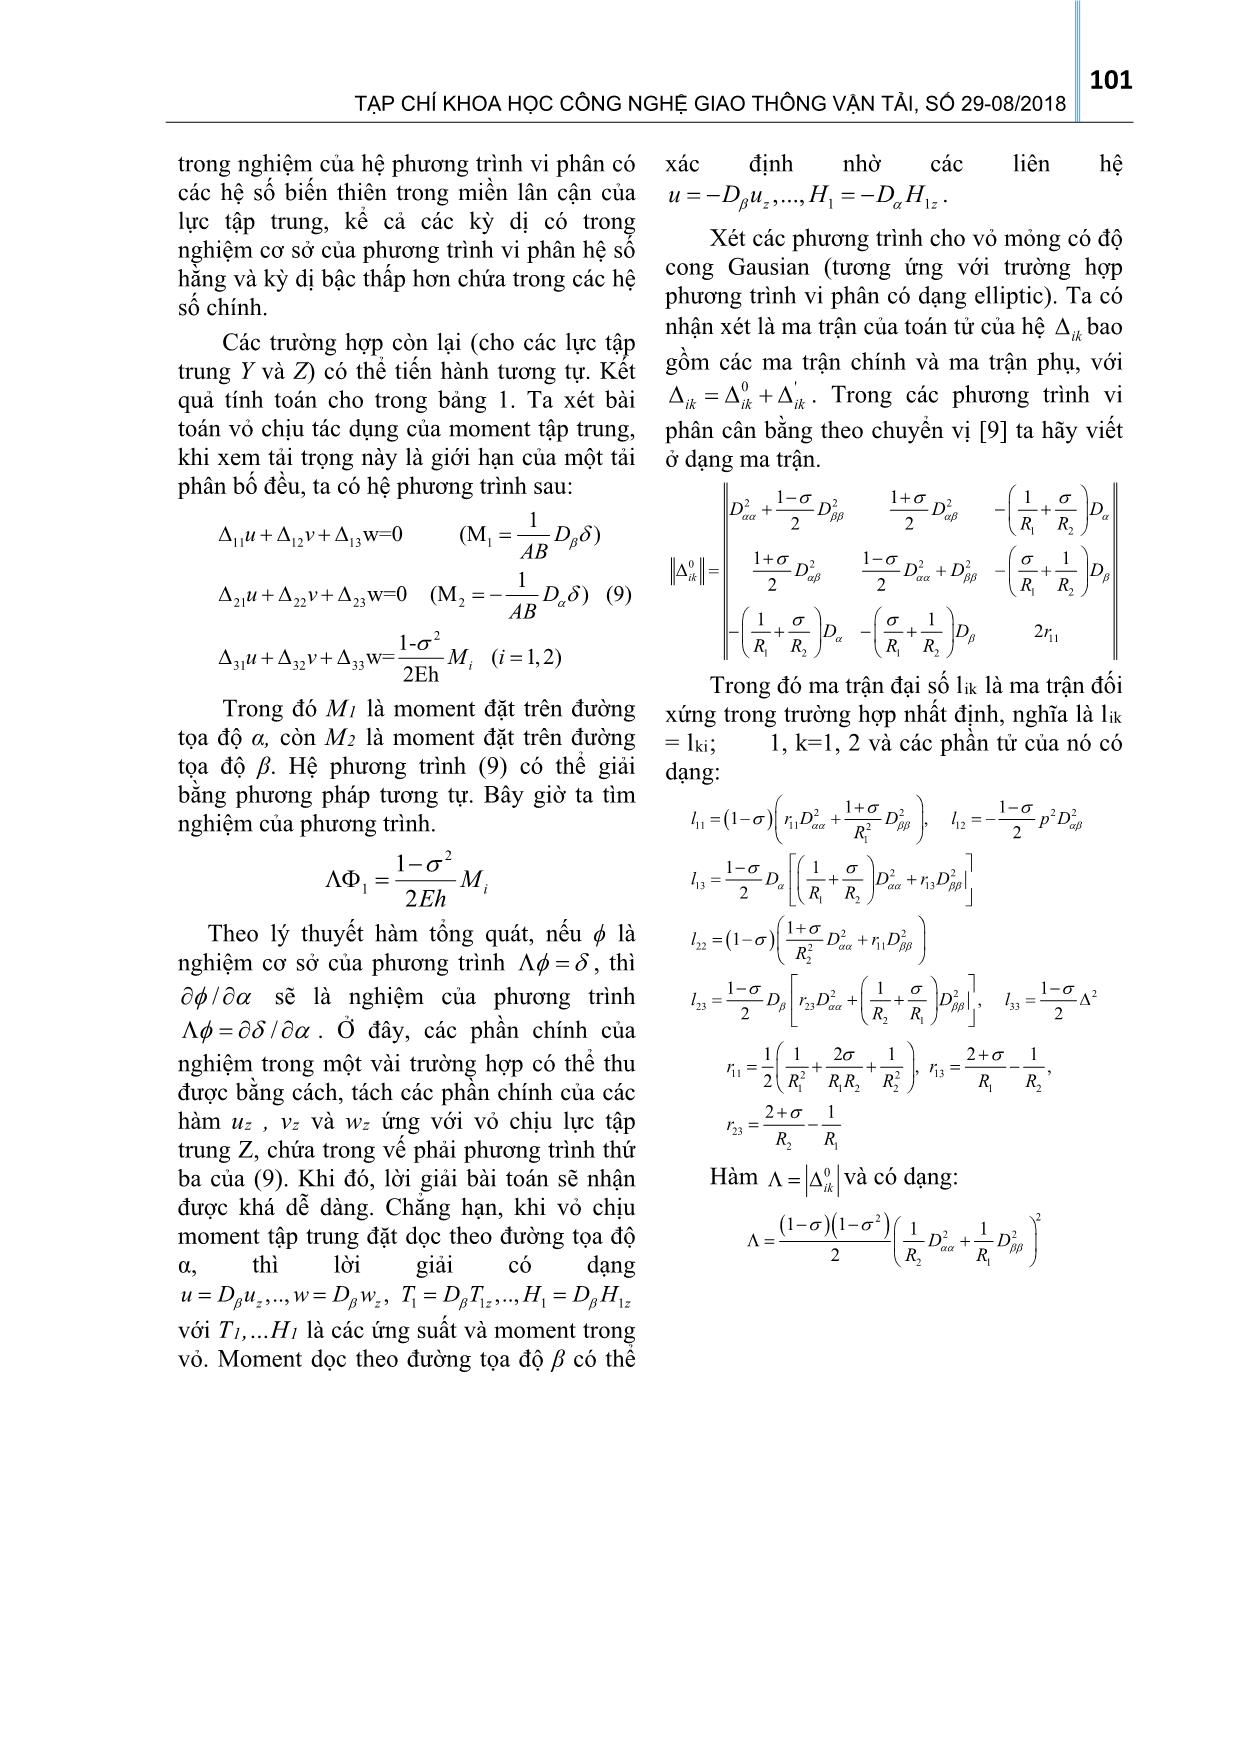 Về vấn đề xây dựng nghiệm cơ sở cho một lớp các bài toán vỏ mỏng chịu uốn trang 5